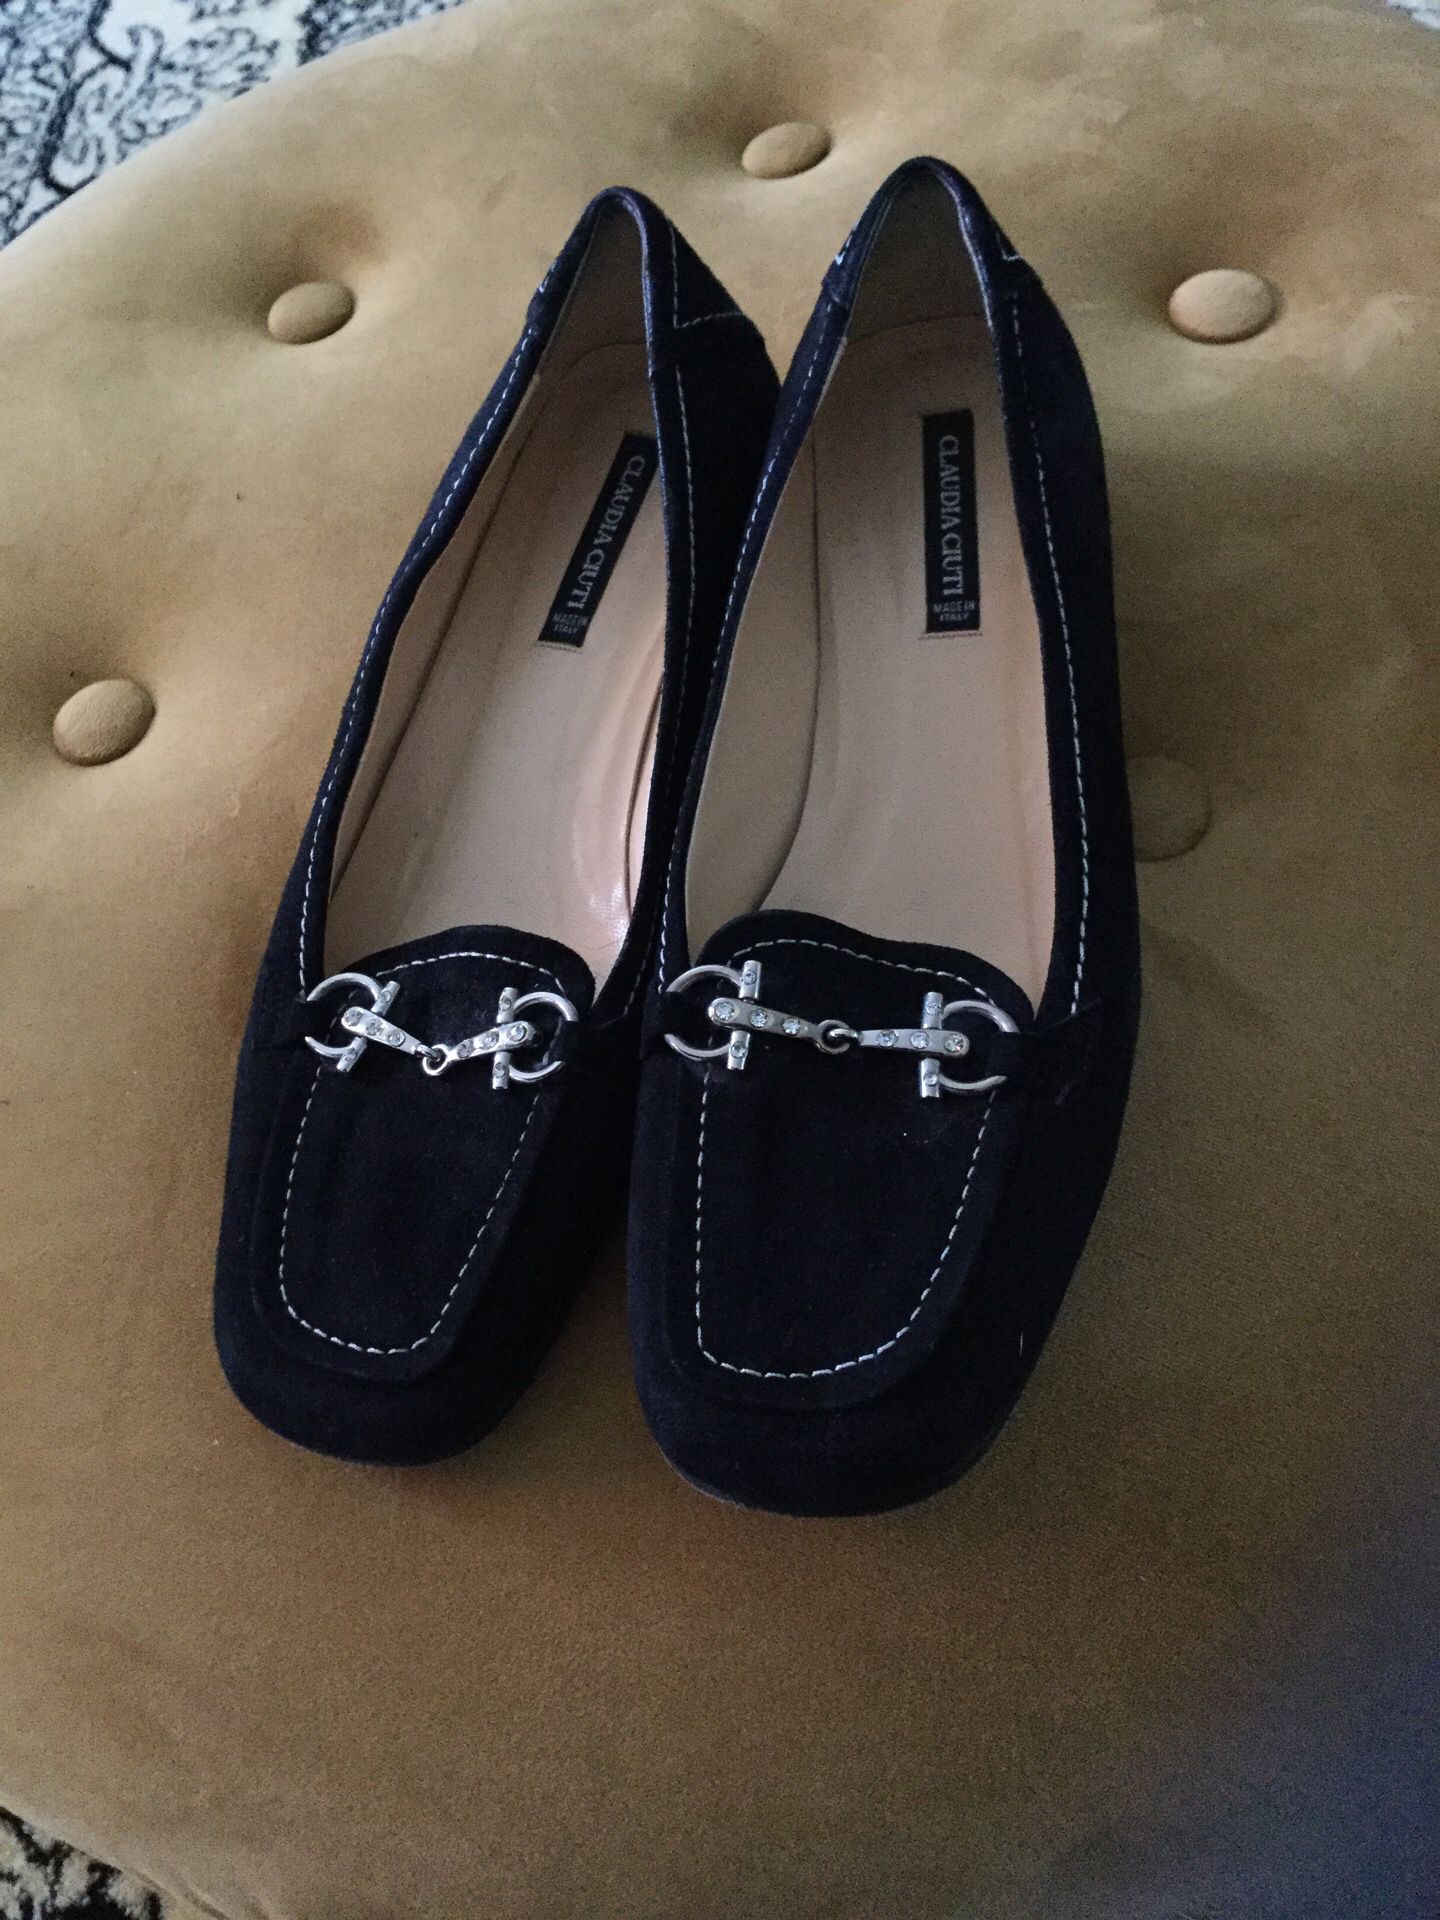 Beautiful Italian Shoes Claudia Ciuti Size 6.5 women